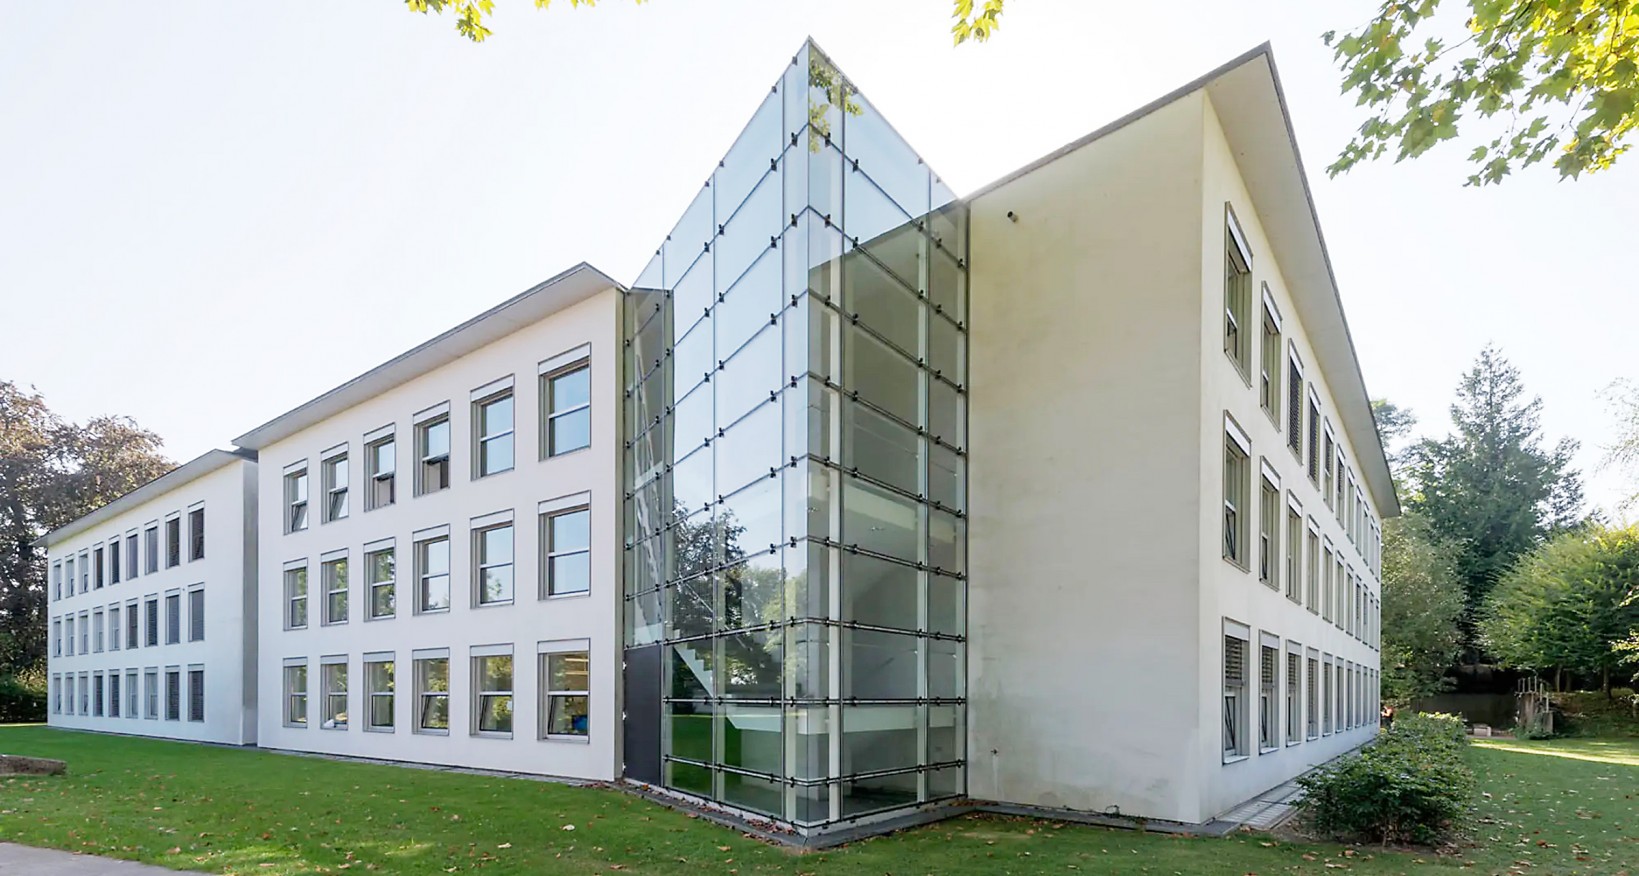 Per sofort oder nach Vereinbarung vermieten wir attraktive  Büroräume mit einer Fläche von 158 m2 für ca. 20 Arbeitsplätze  in der Altstadt von Aarau.